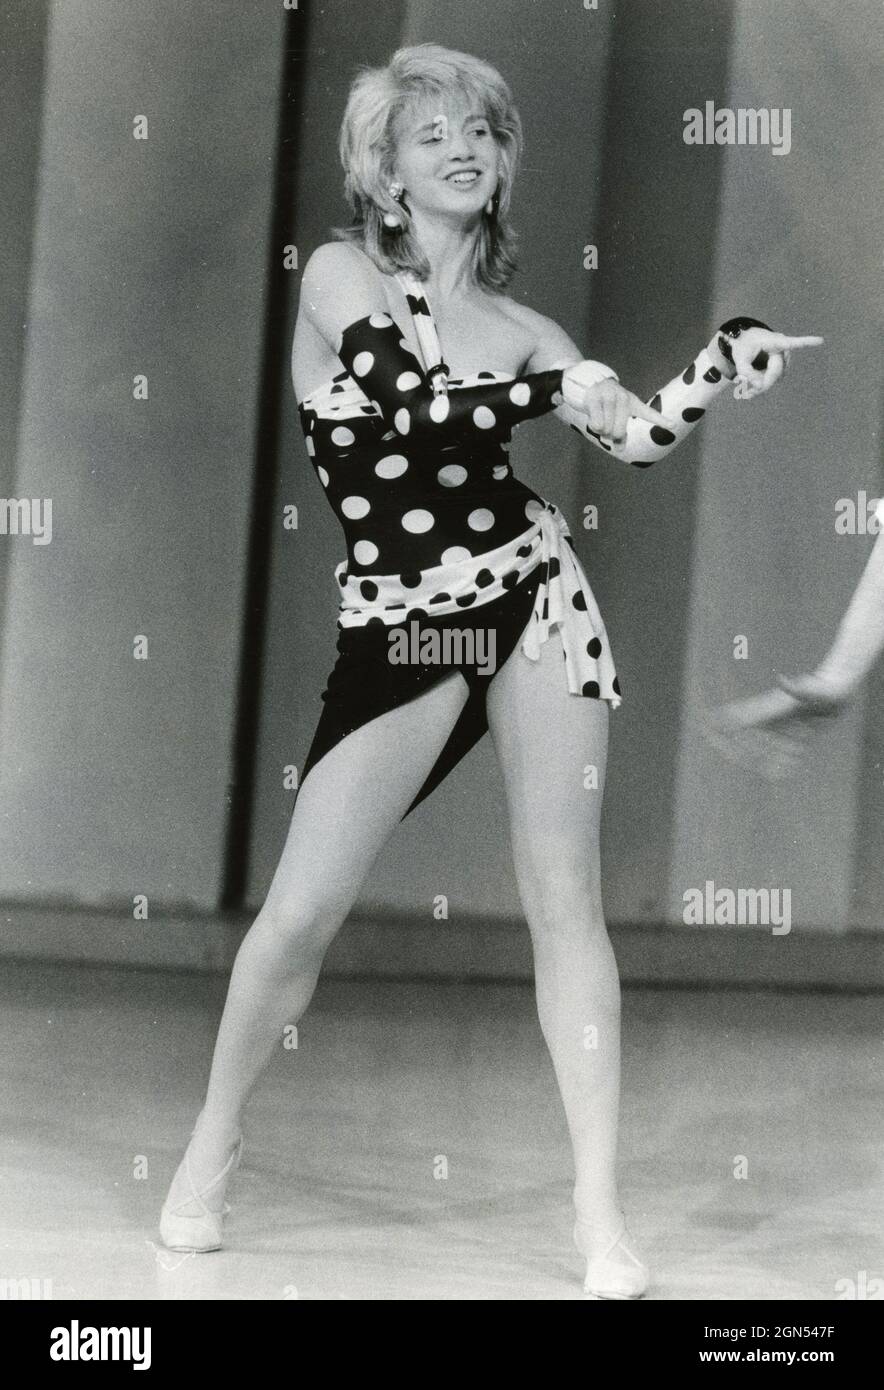 Danseuse et danseuse italienne Lorella Cuccarini à l'émission de télévision Fantastico 6, années 1980 Banque D'Images